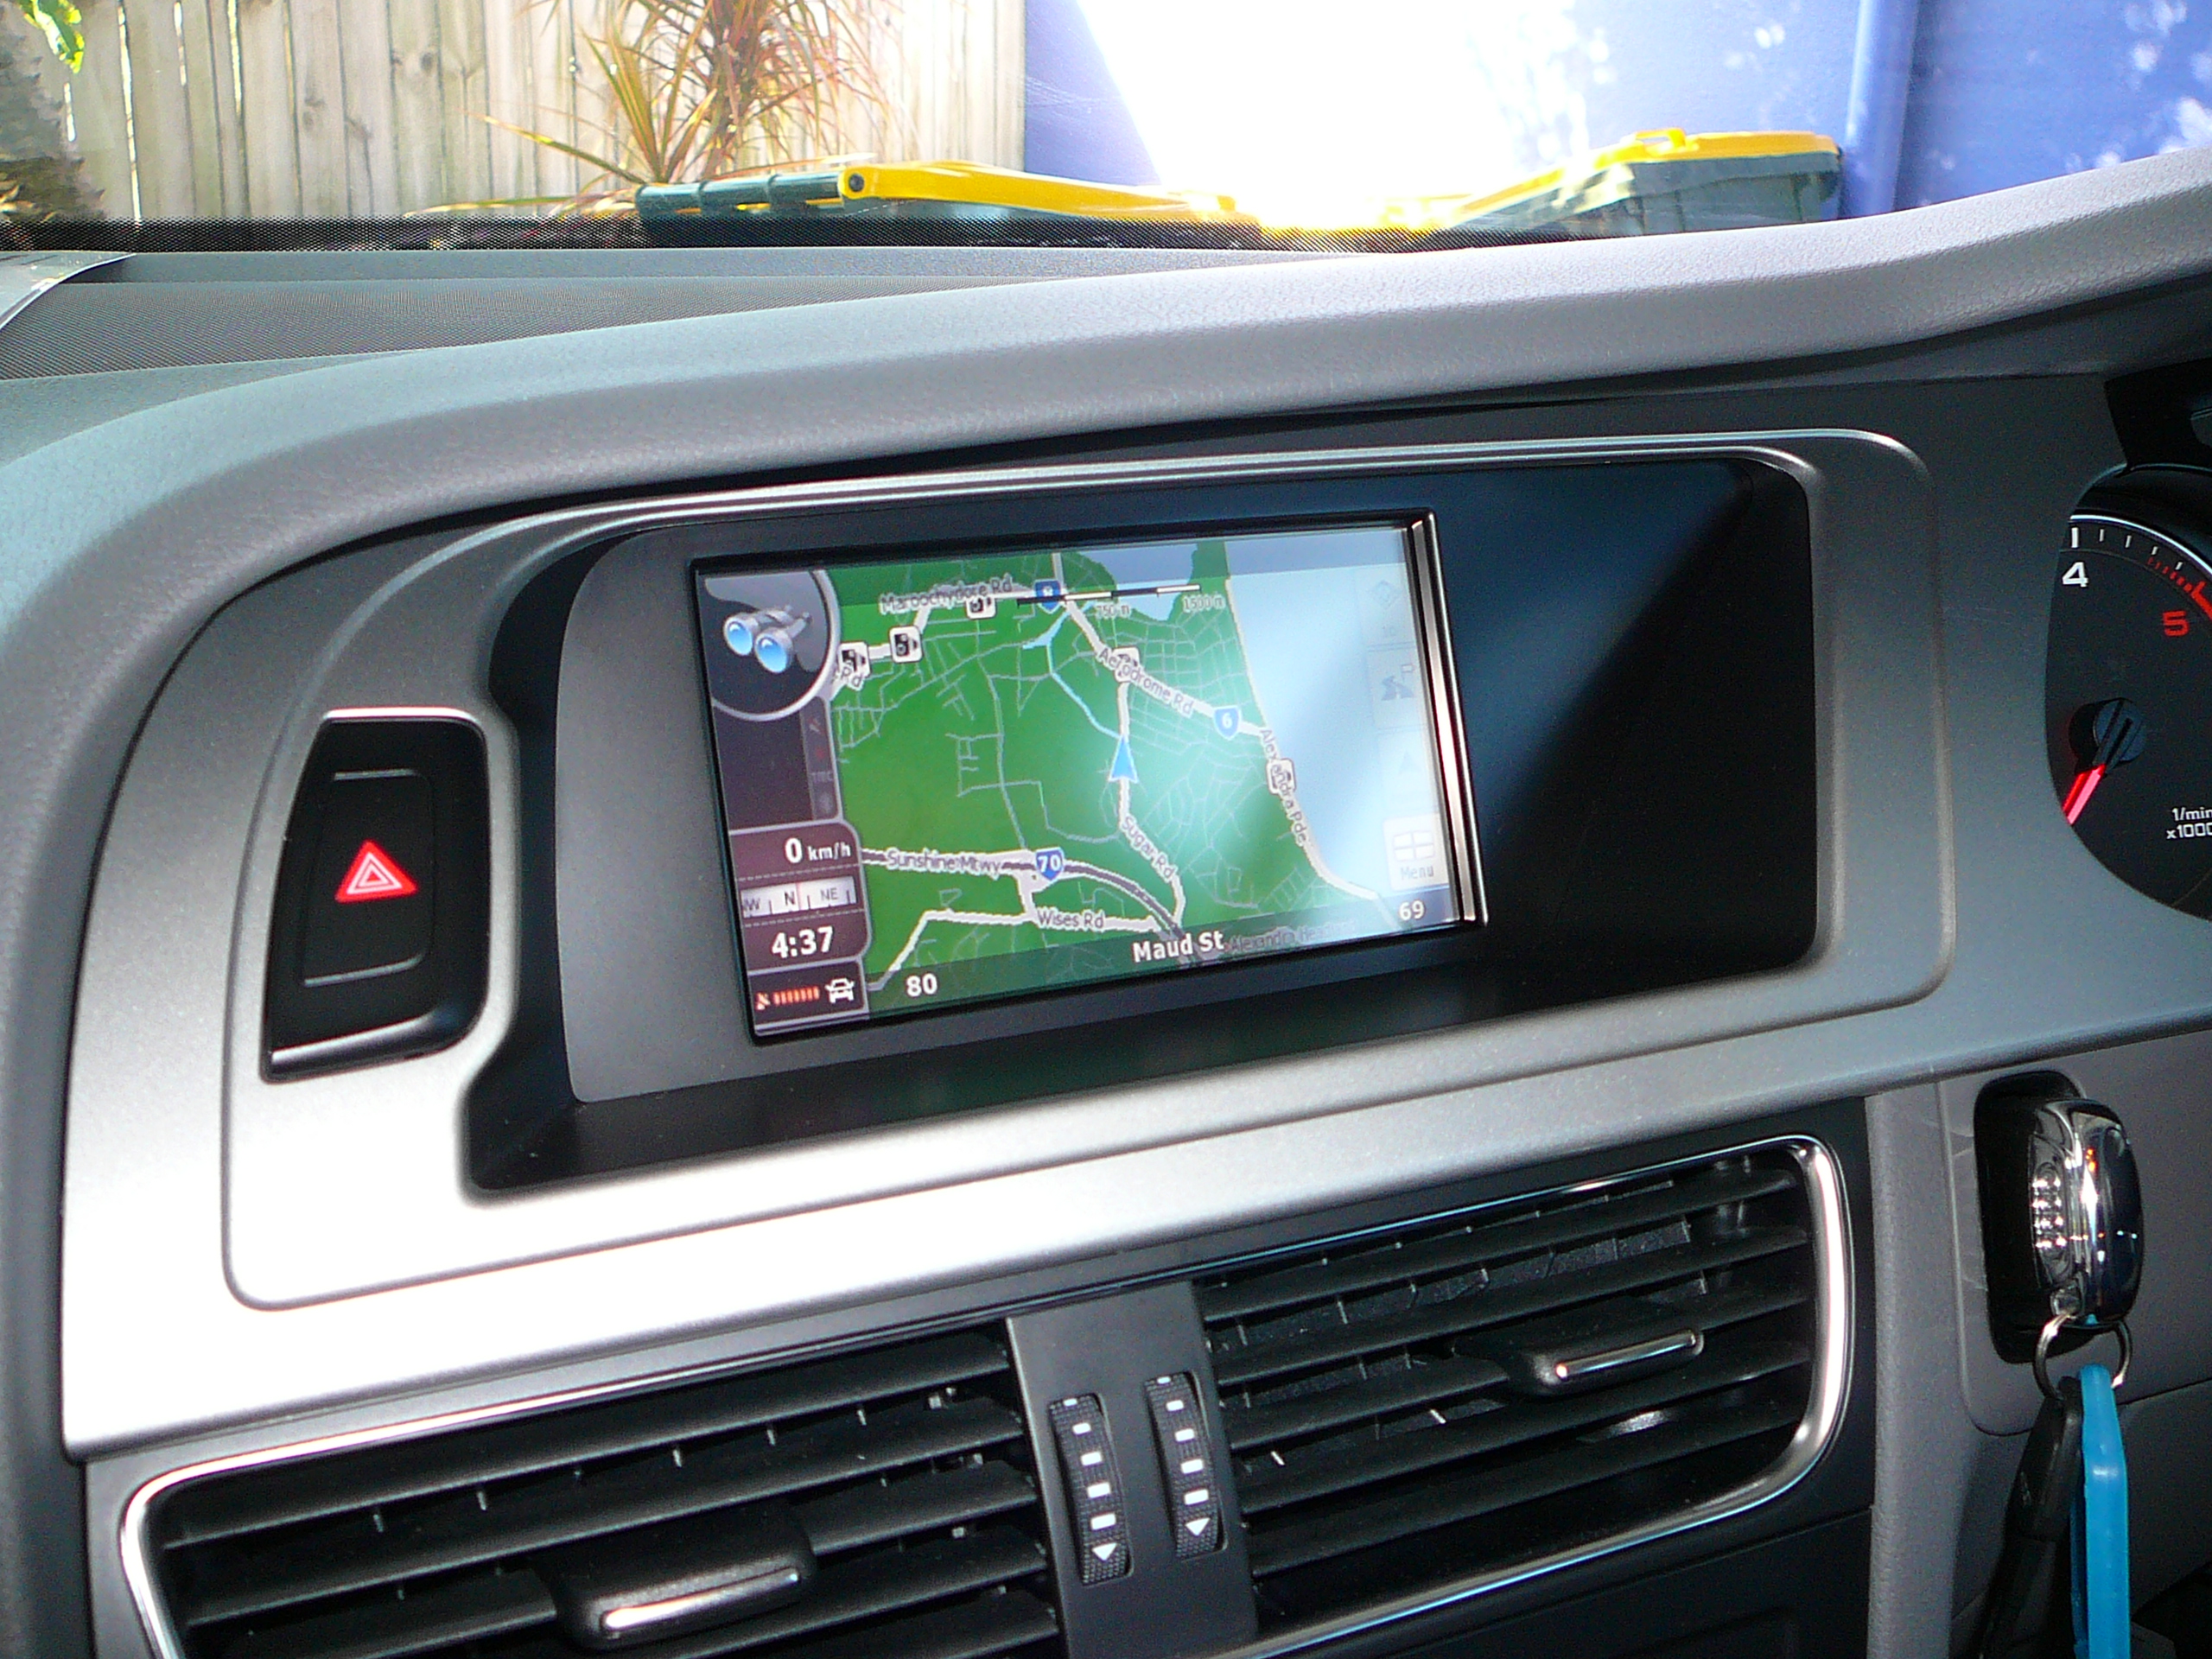 Audi A4 Navigation & Reverse Camera